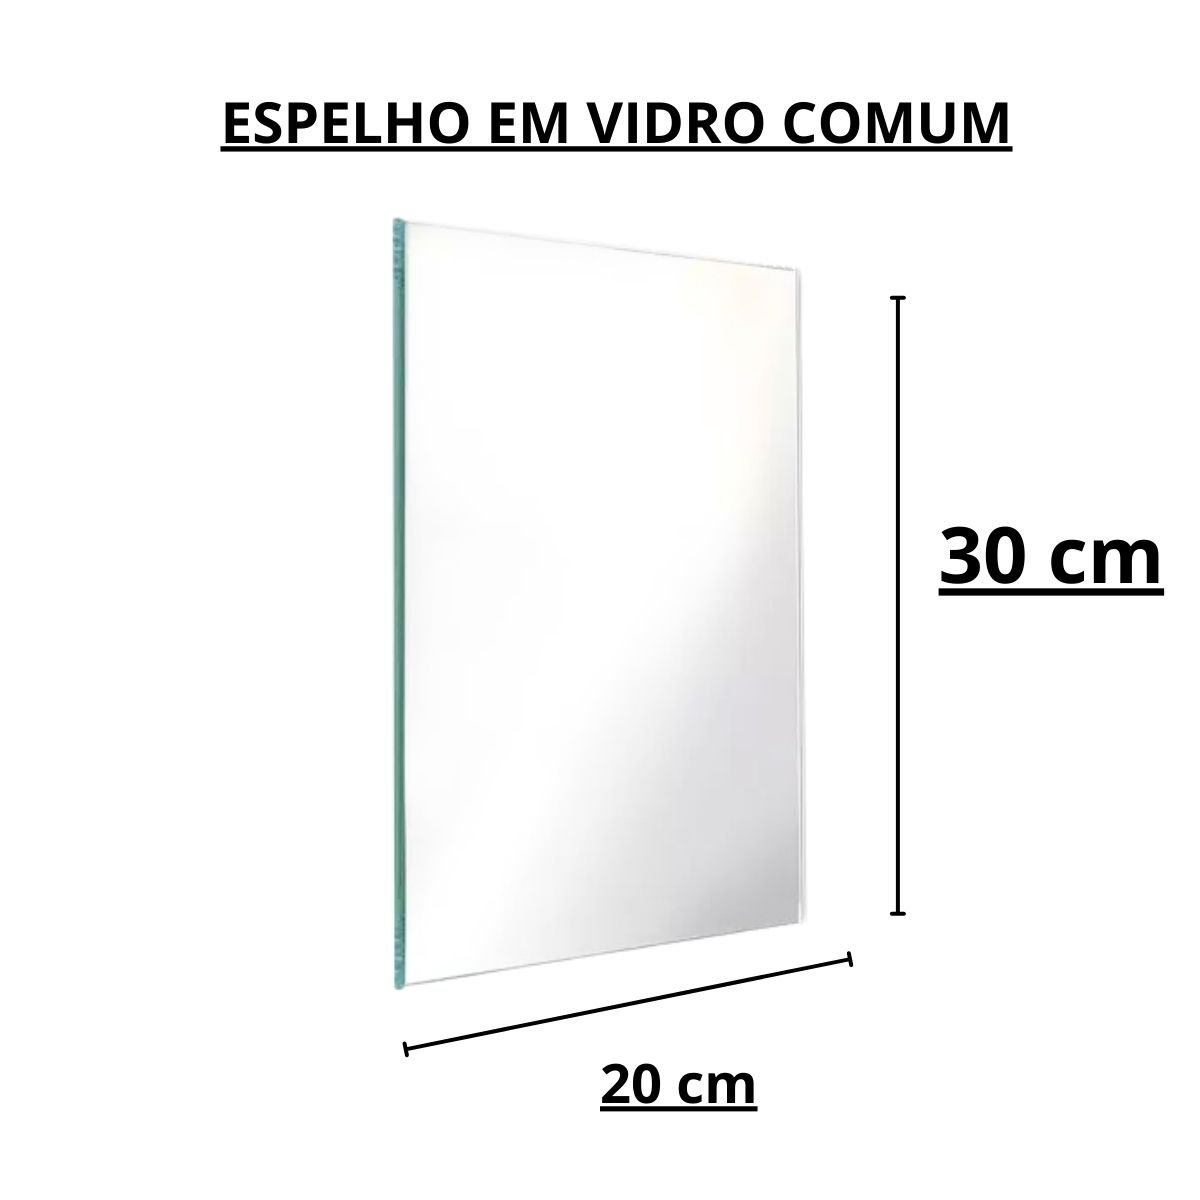 Espelho Retangular Parede 20x30x3 Banheiro Decoração Vidro - 2